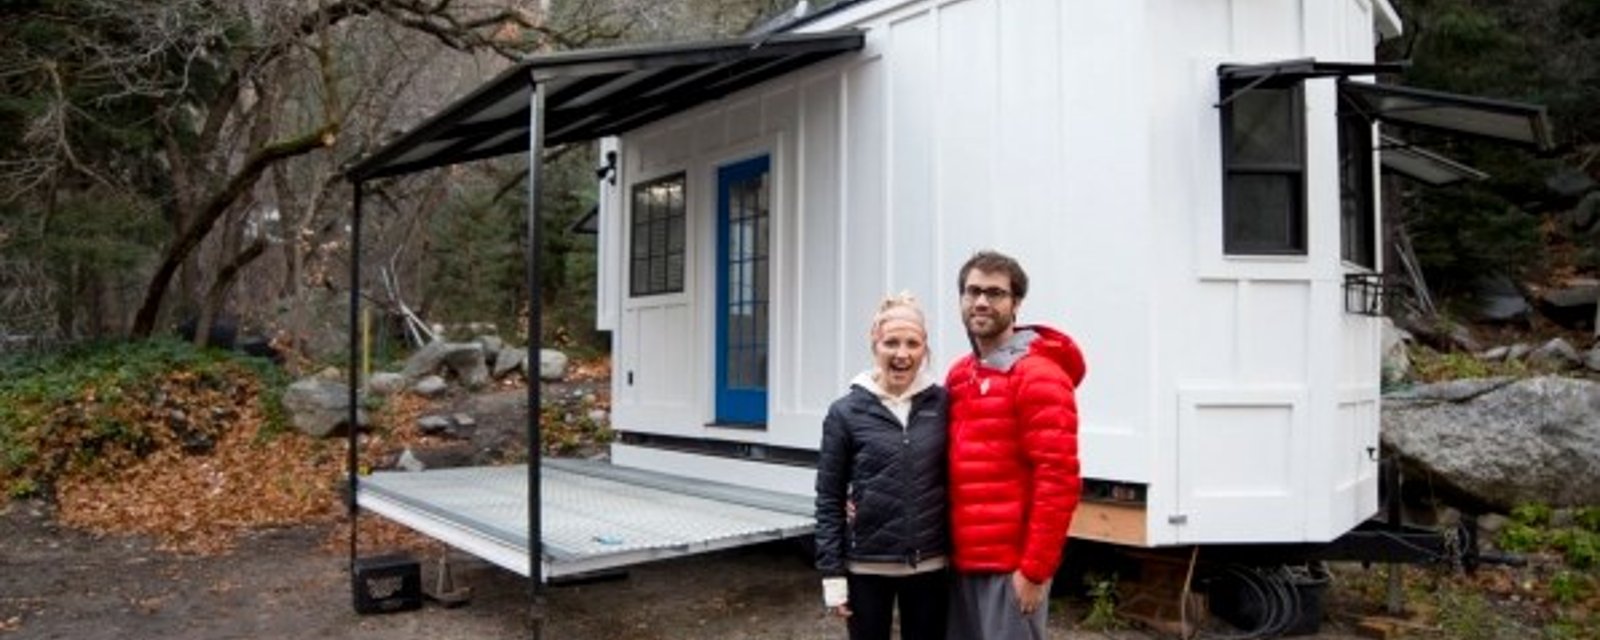 Un couple se construit une mini-maison à partir de rien et le résultat surpasse les attentes